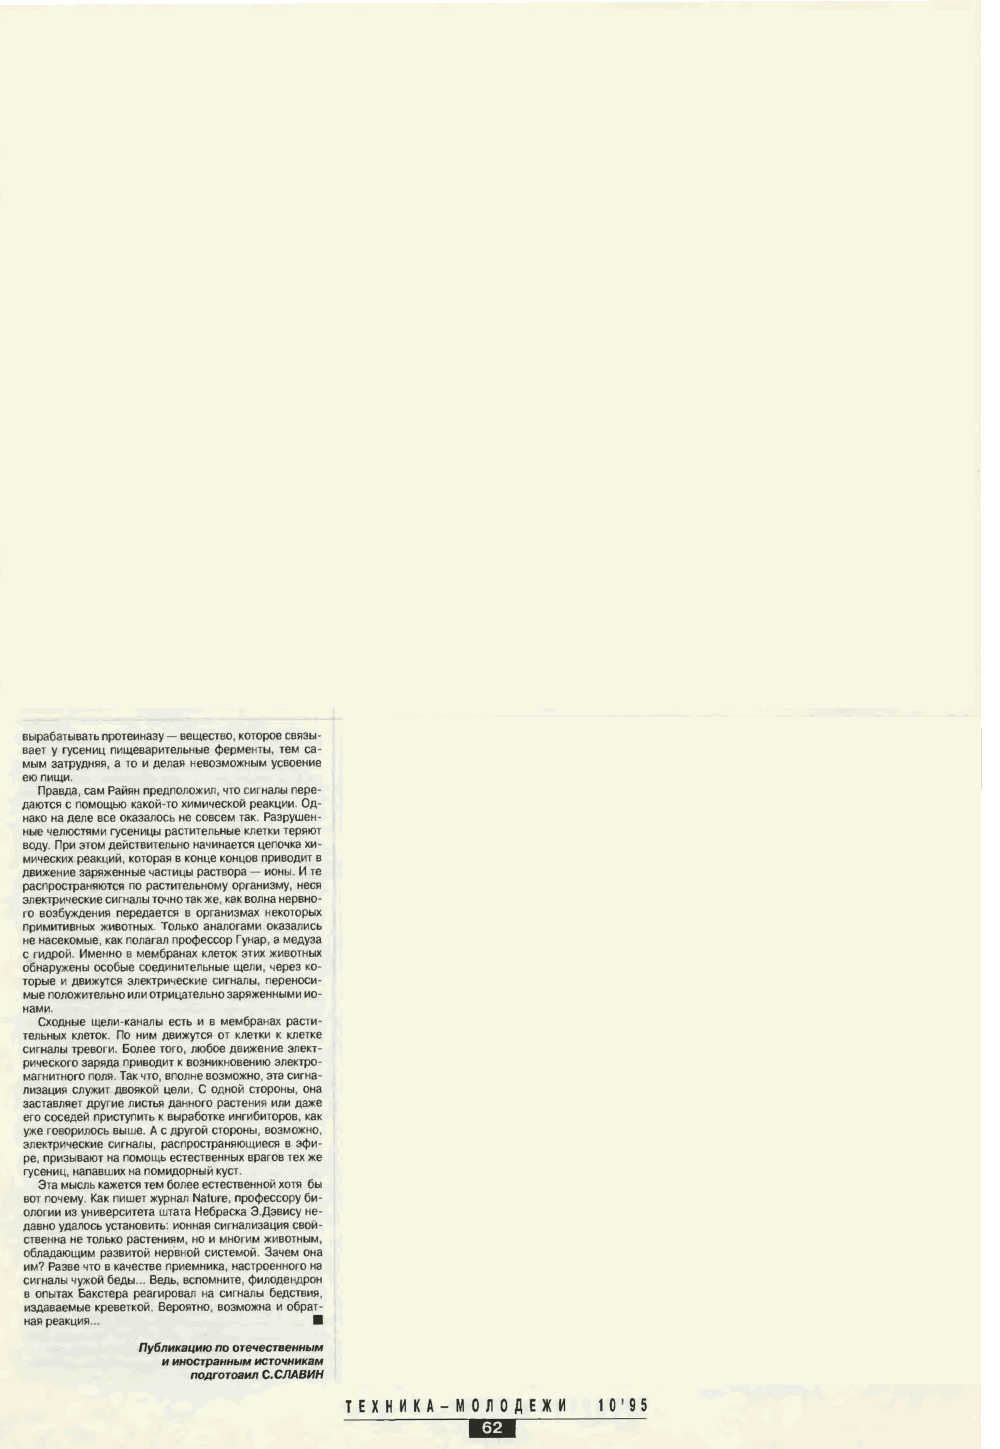 Радиостанции беды. С. Славин. Техника — Молодёжи, 1995, №10, с.60-62. Фотокопия №3